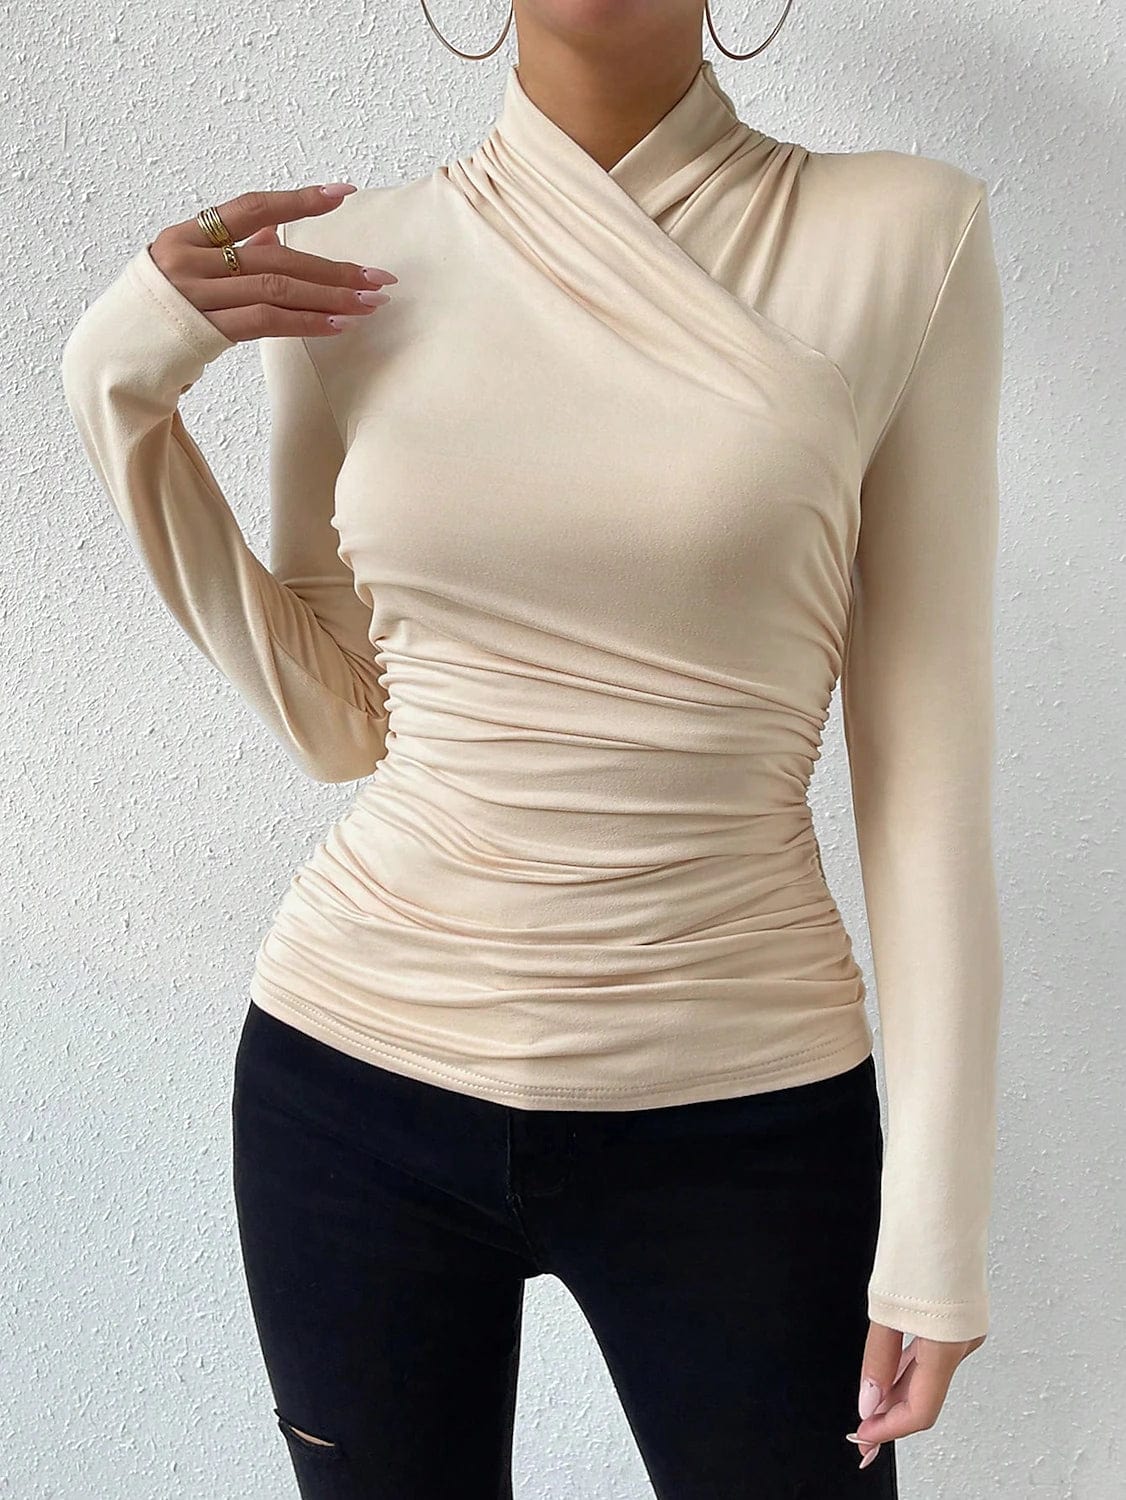 Velvet Women's Long Sleeve V-Neck T-Shirt in Black, White, or Orange